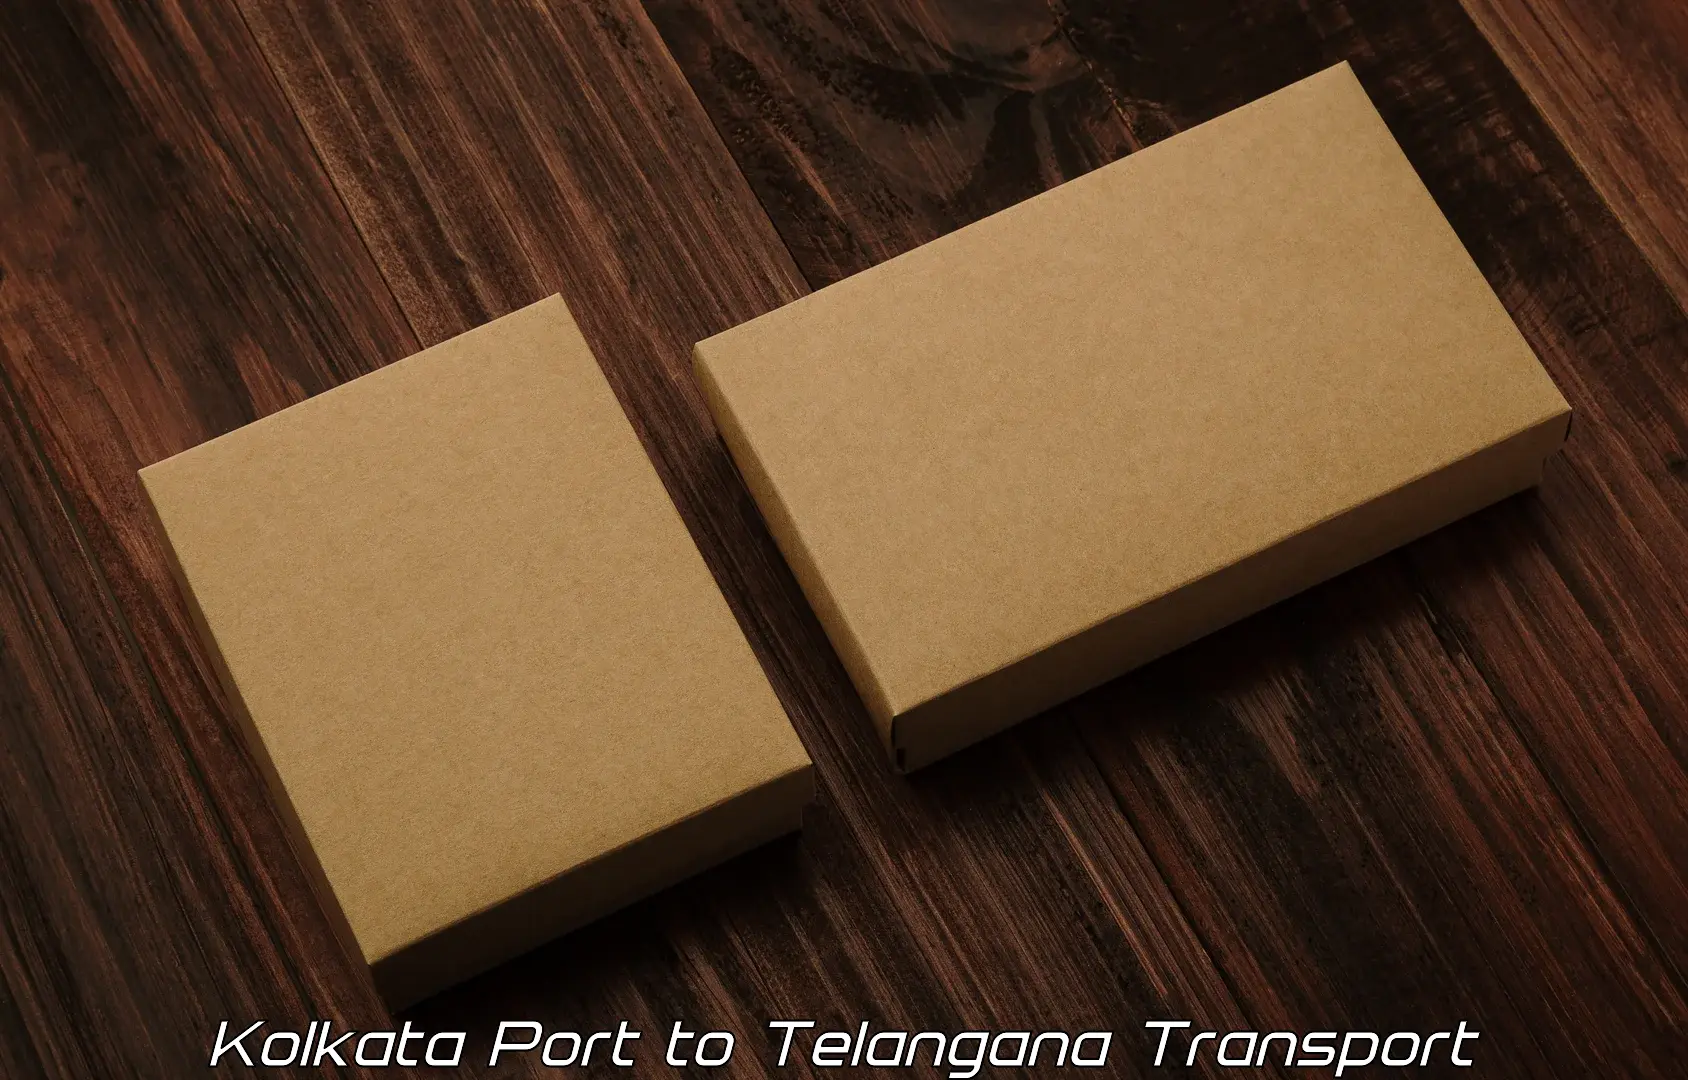 Vehicle transport services Kolkata Port to Medchal